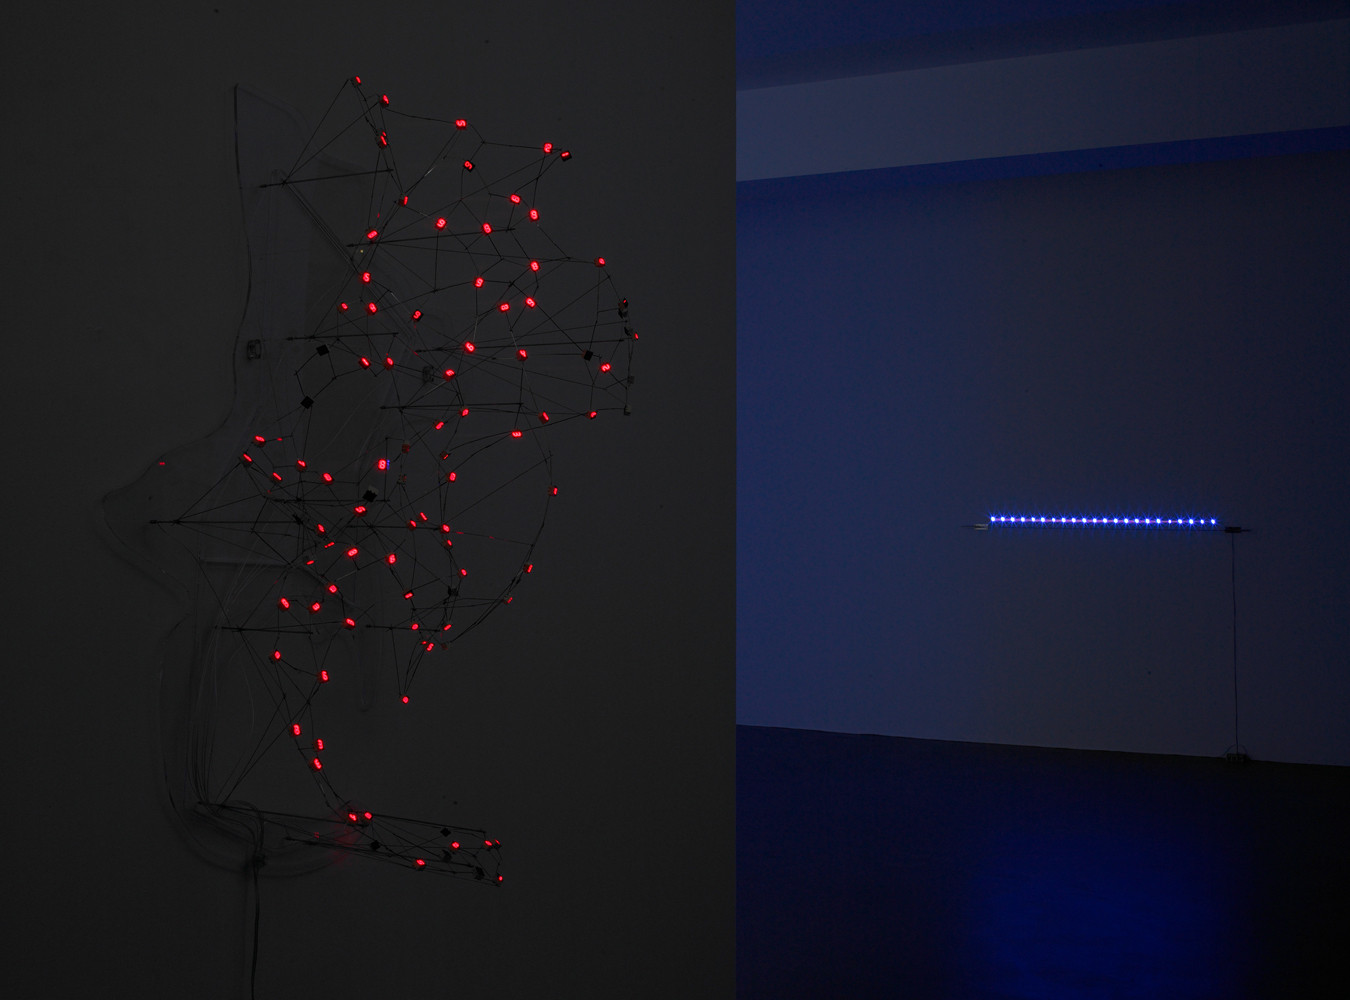 Tatsuo Miyajima, ‘Fragile World’, Installationsansicht, Buchmann Galerie, 2007